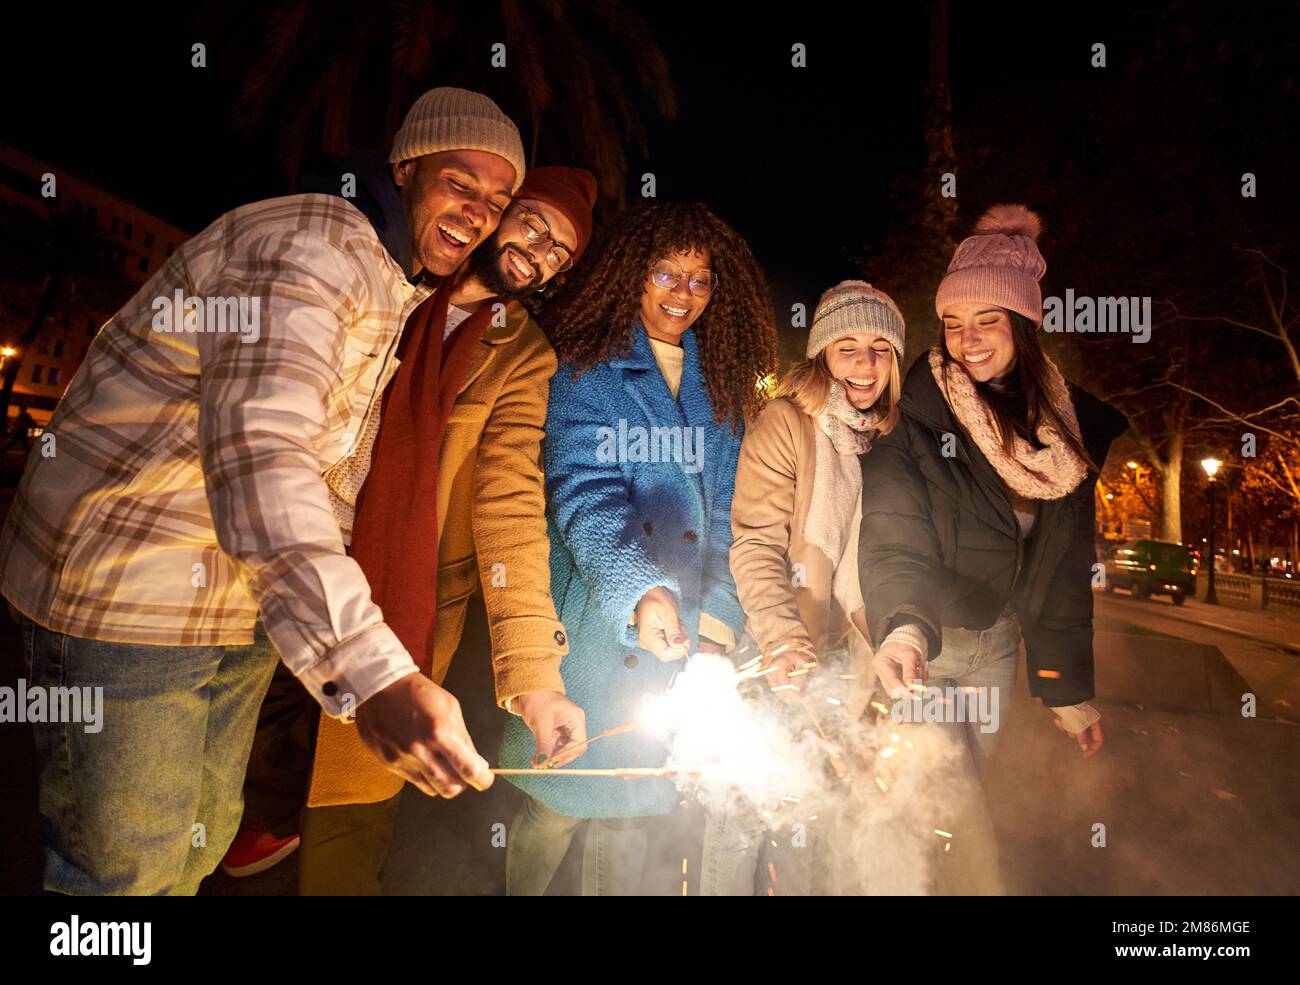 Eine Gruppe von Freunden feiert mit einem Feuerwerk bei der Abendparty. Menschen unterschiedlicher ethnischer Herkunft Stockfoto